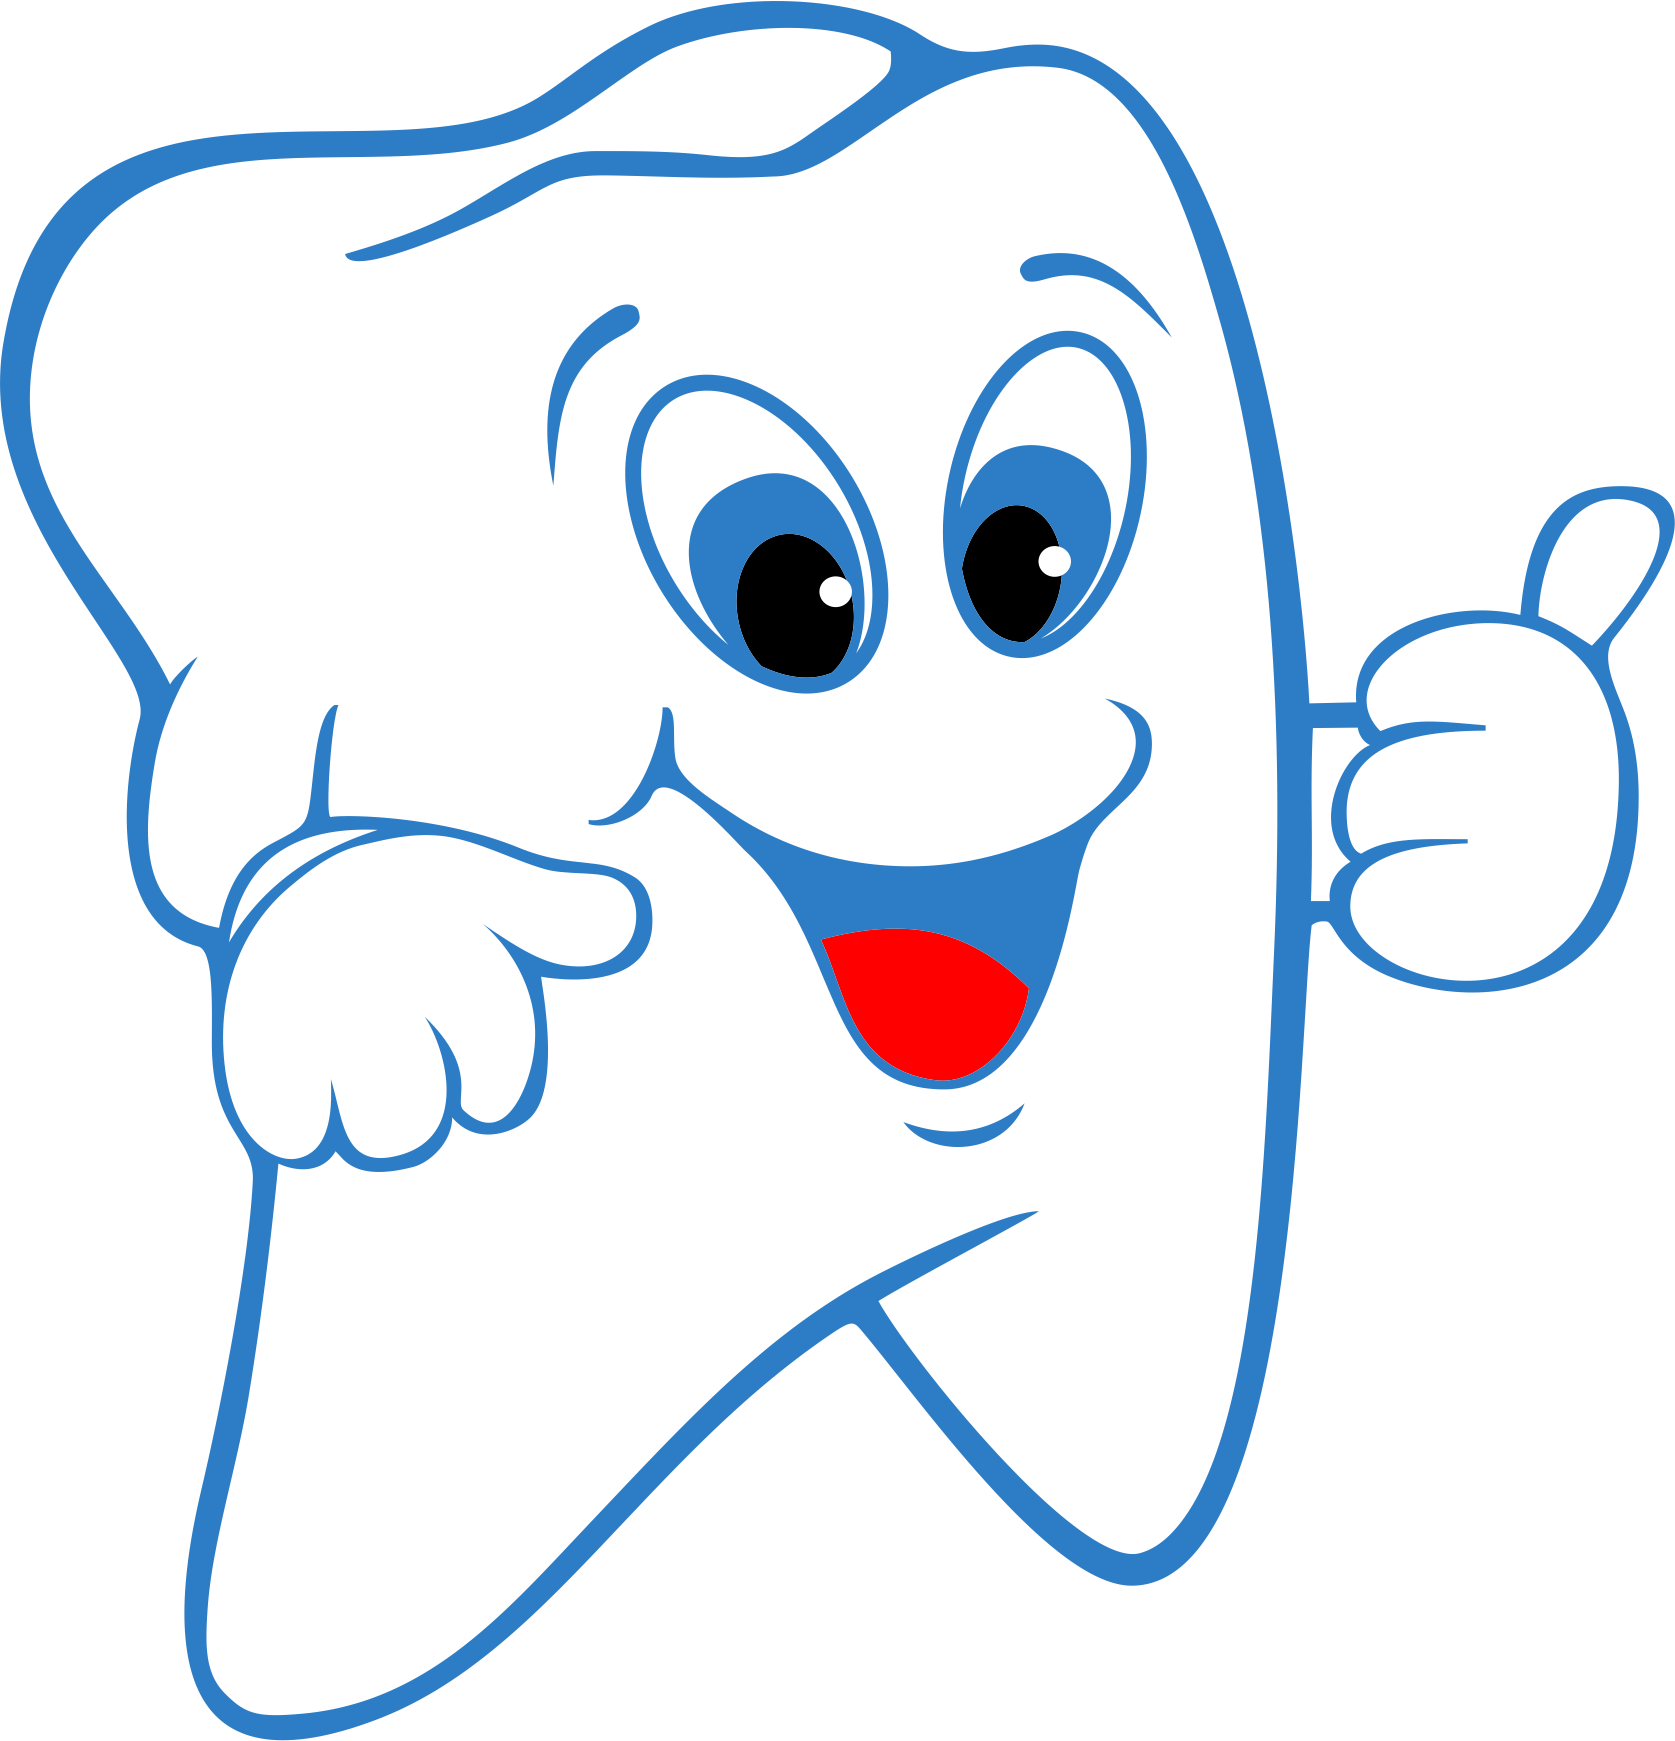 Imagen Transparente del diente saludable